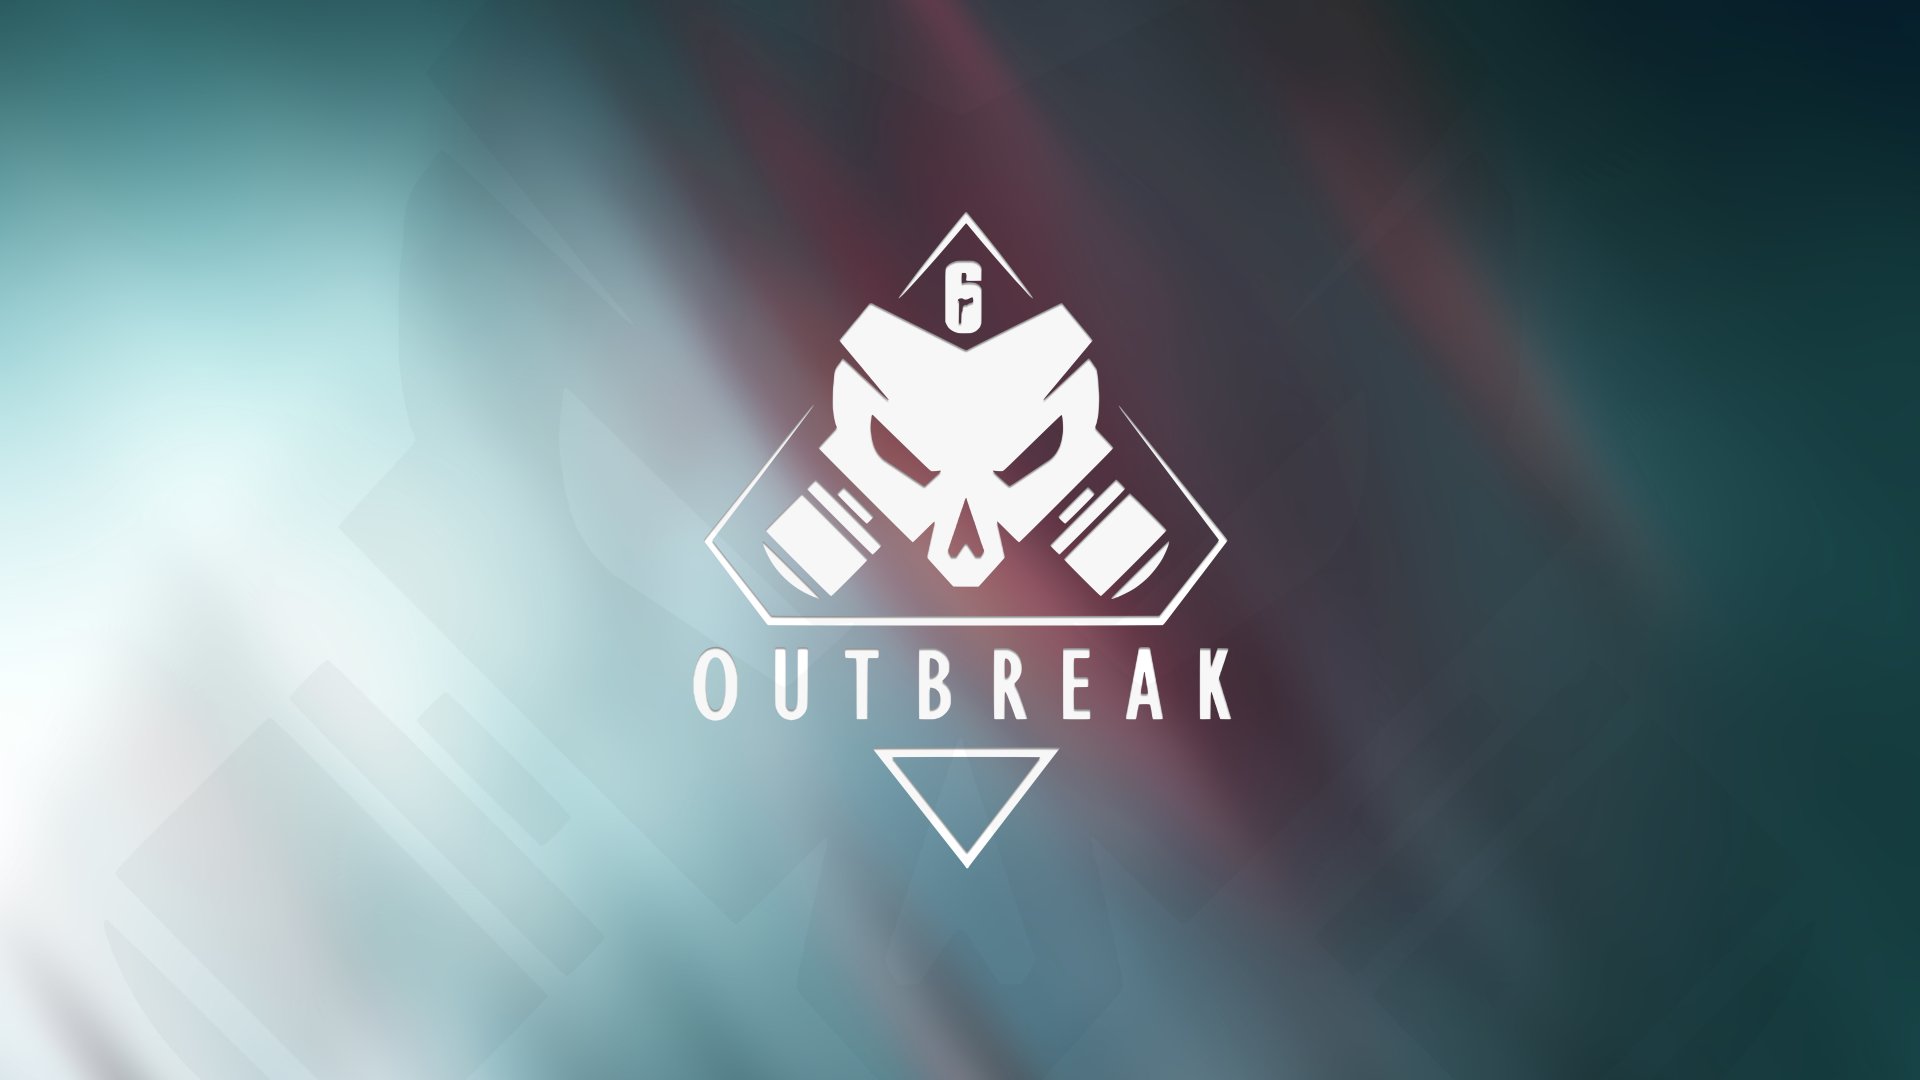 Outbreak 8k Ultra HD Wallpaper Background Image